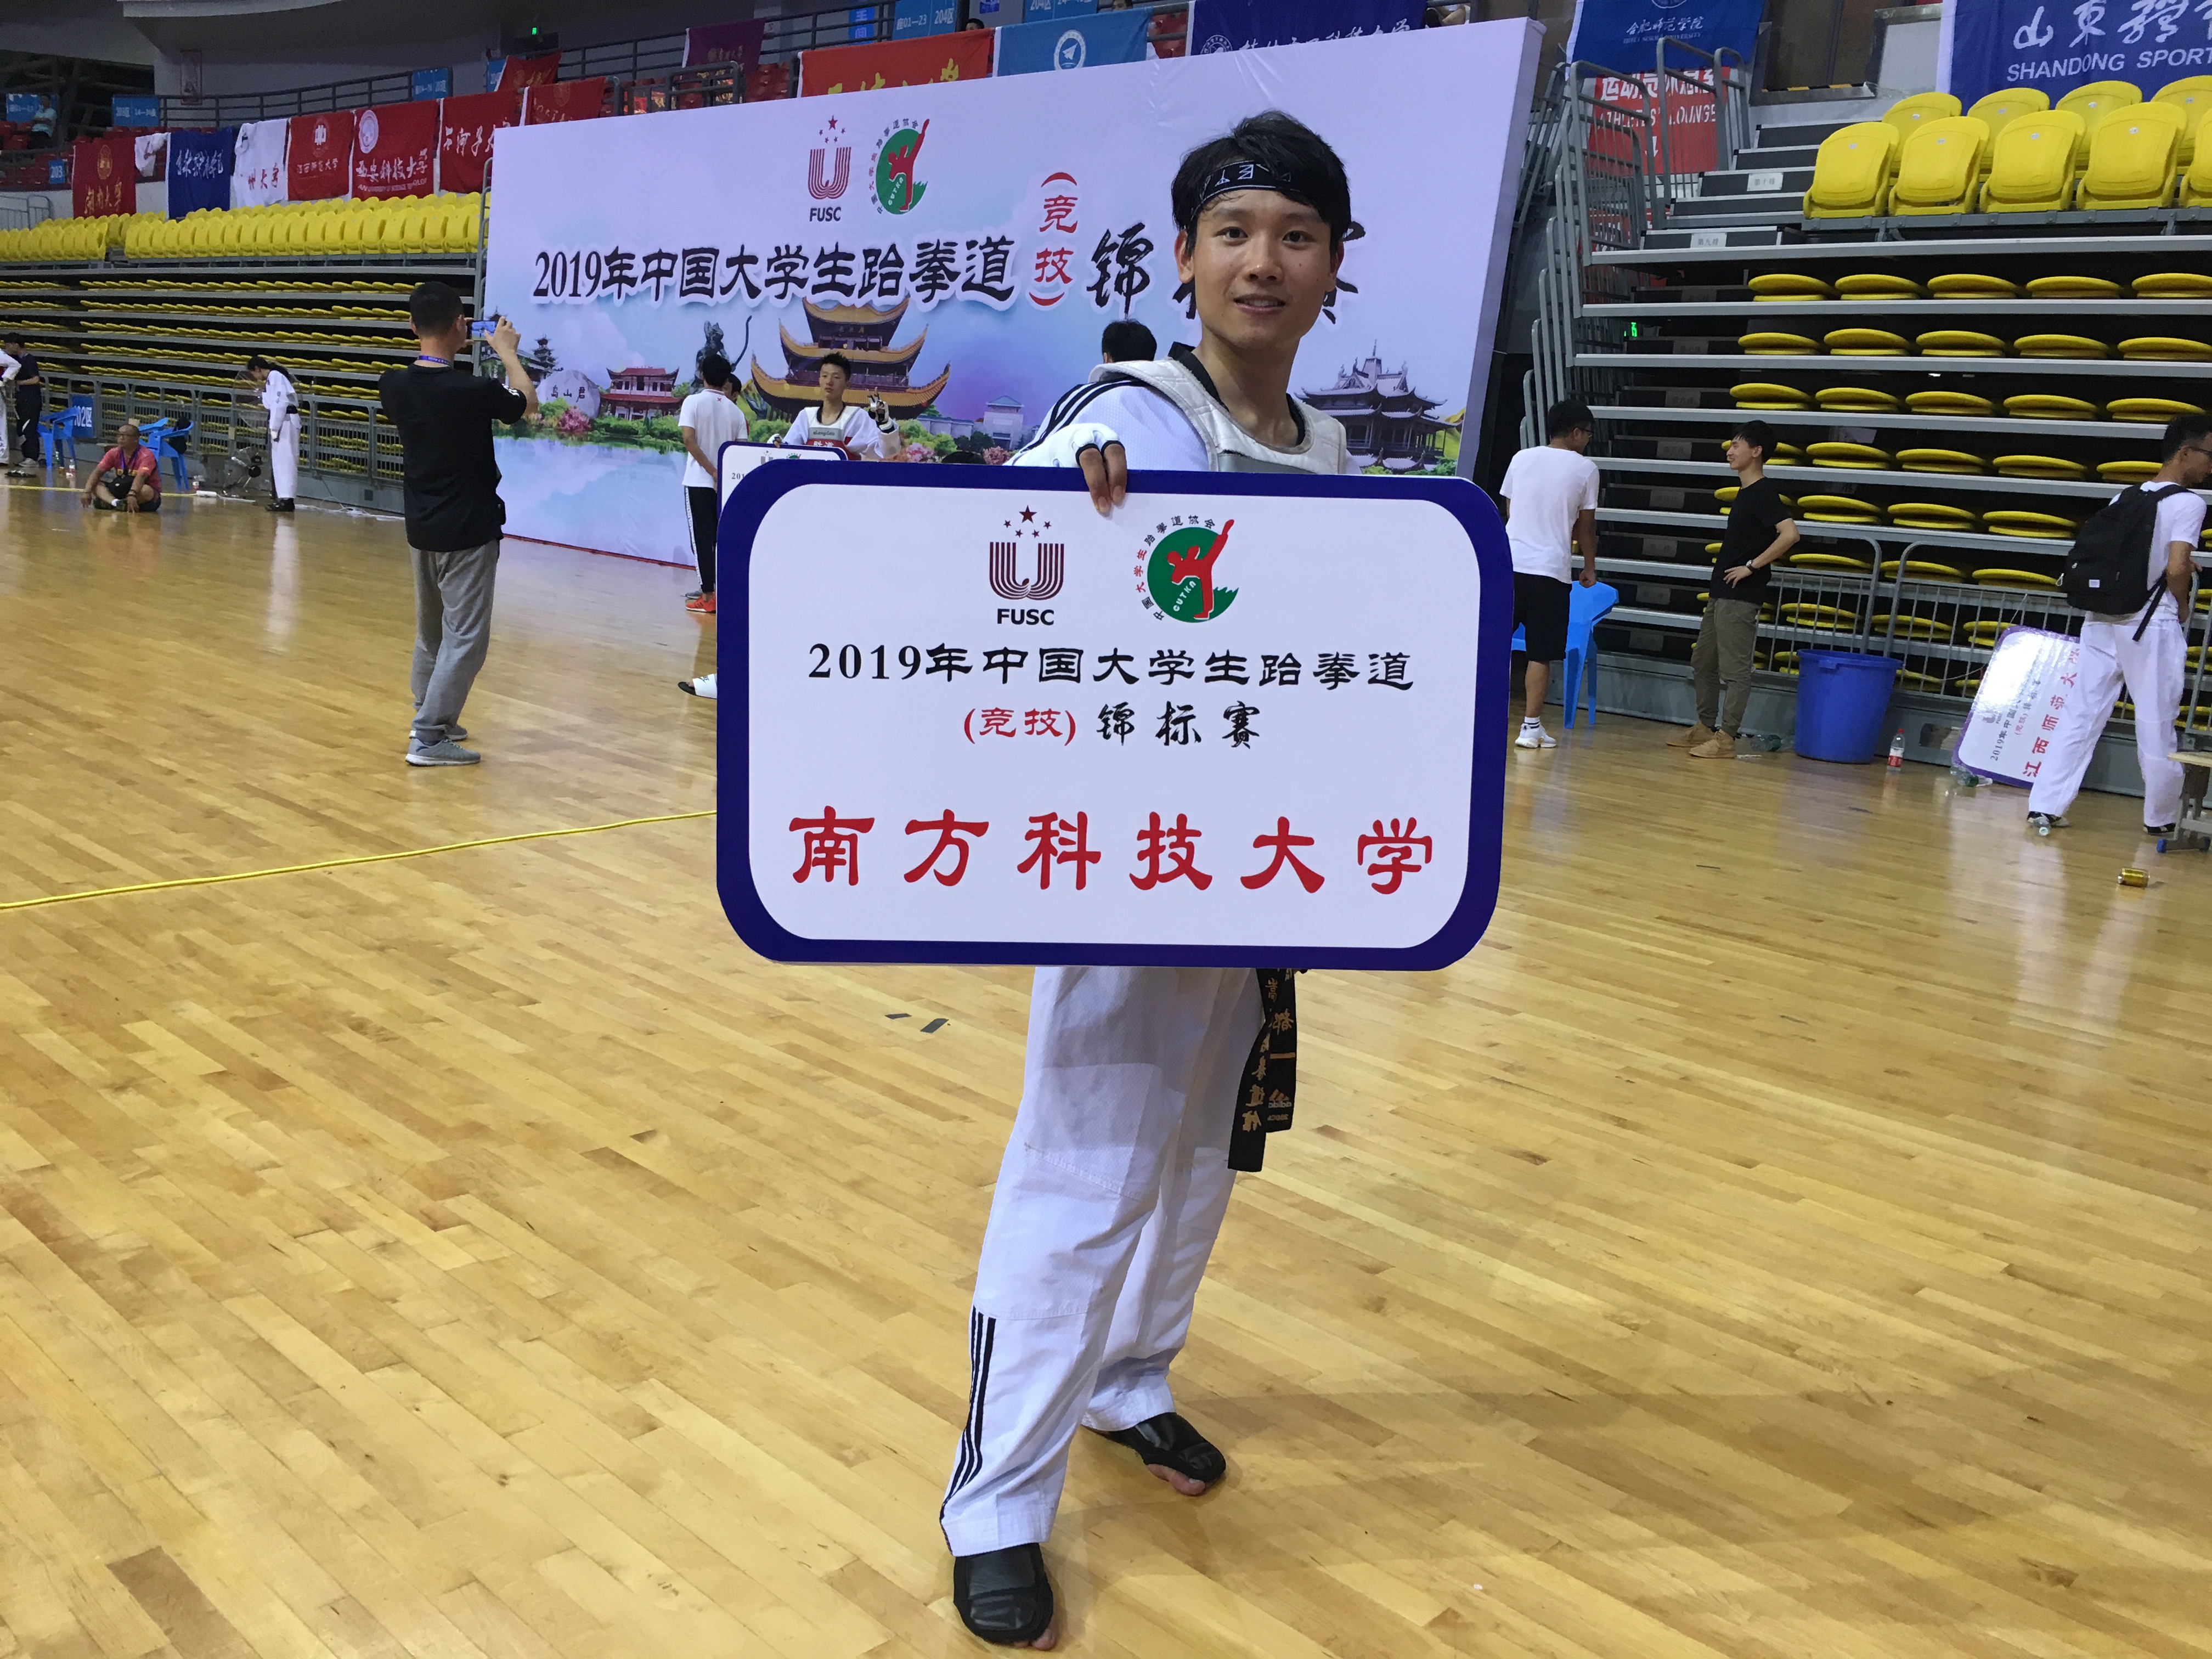 我校跆拳道队在中国大学生跆拳道锦标赛中获得佳绩!